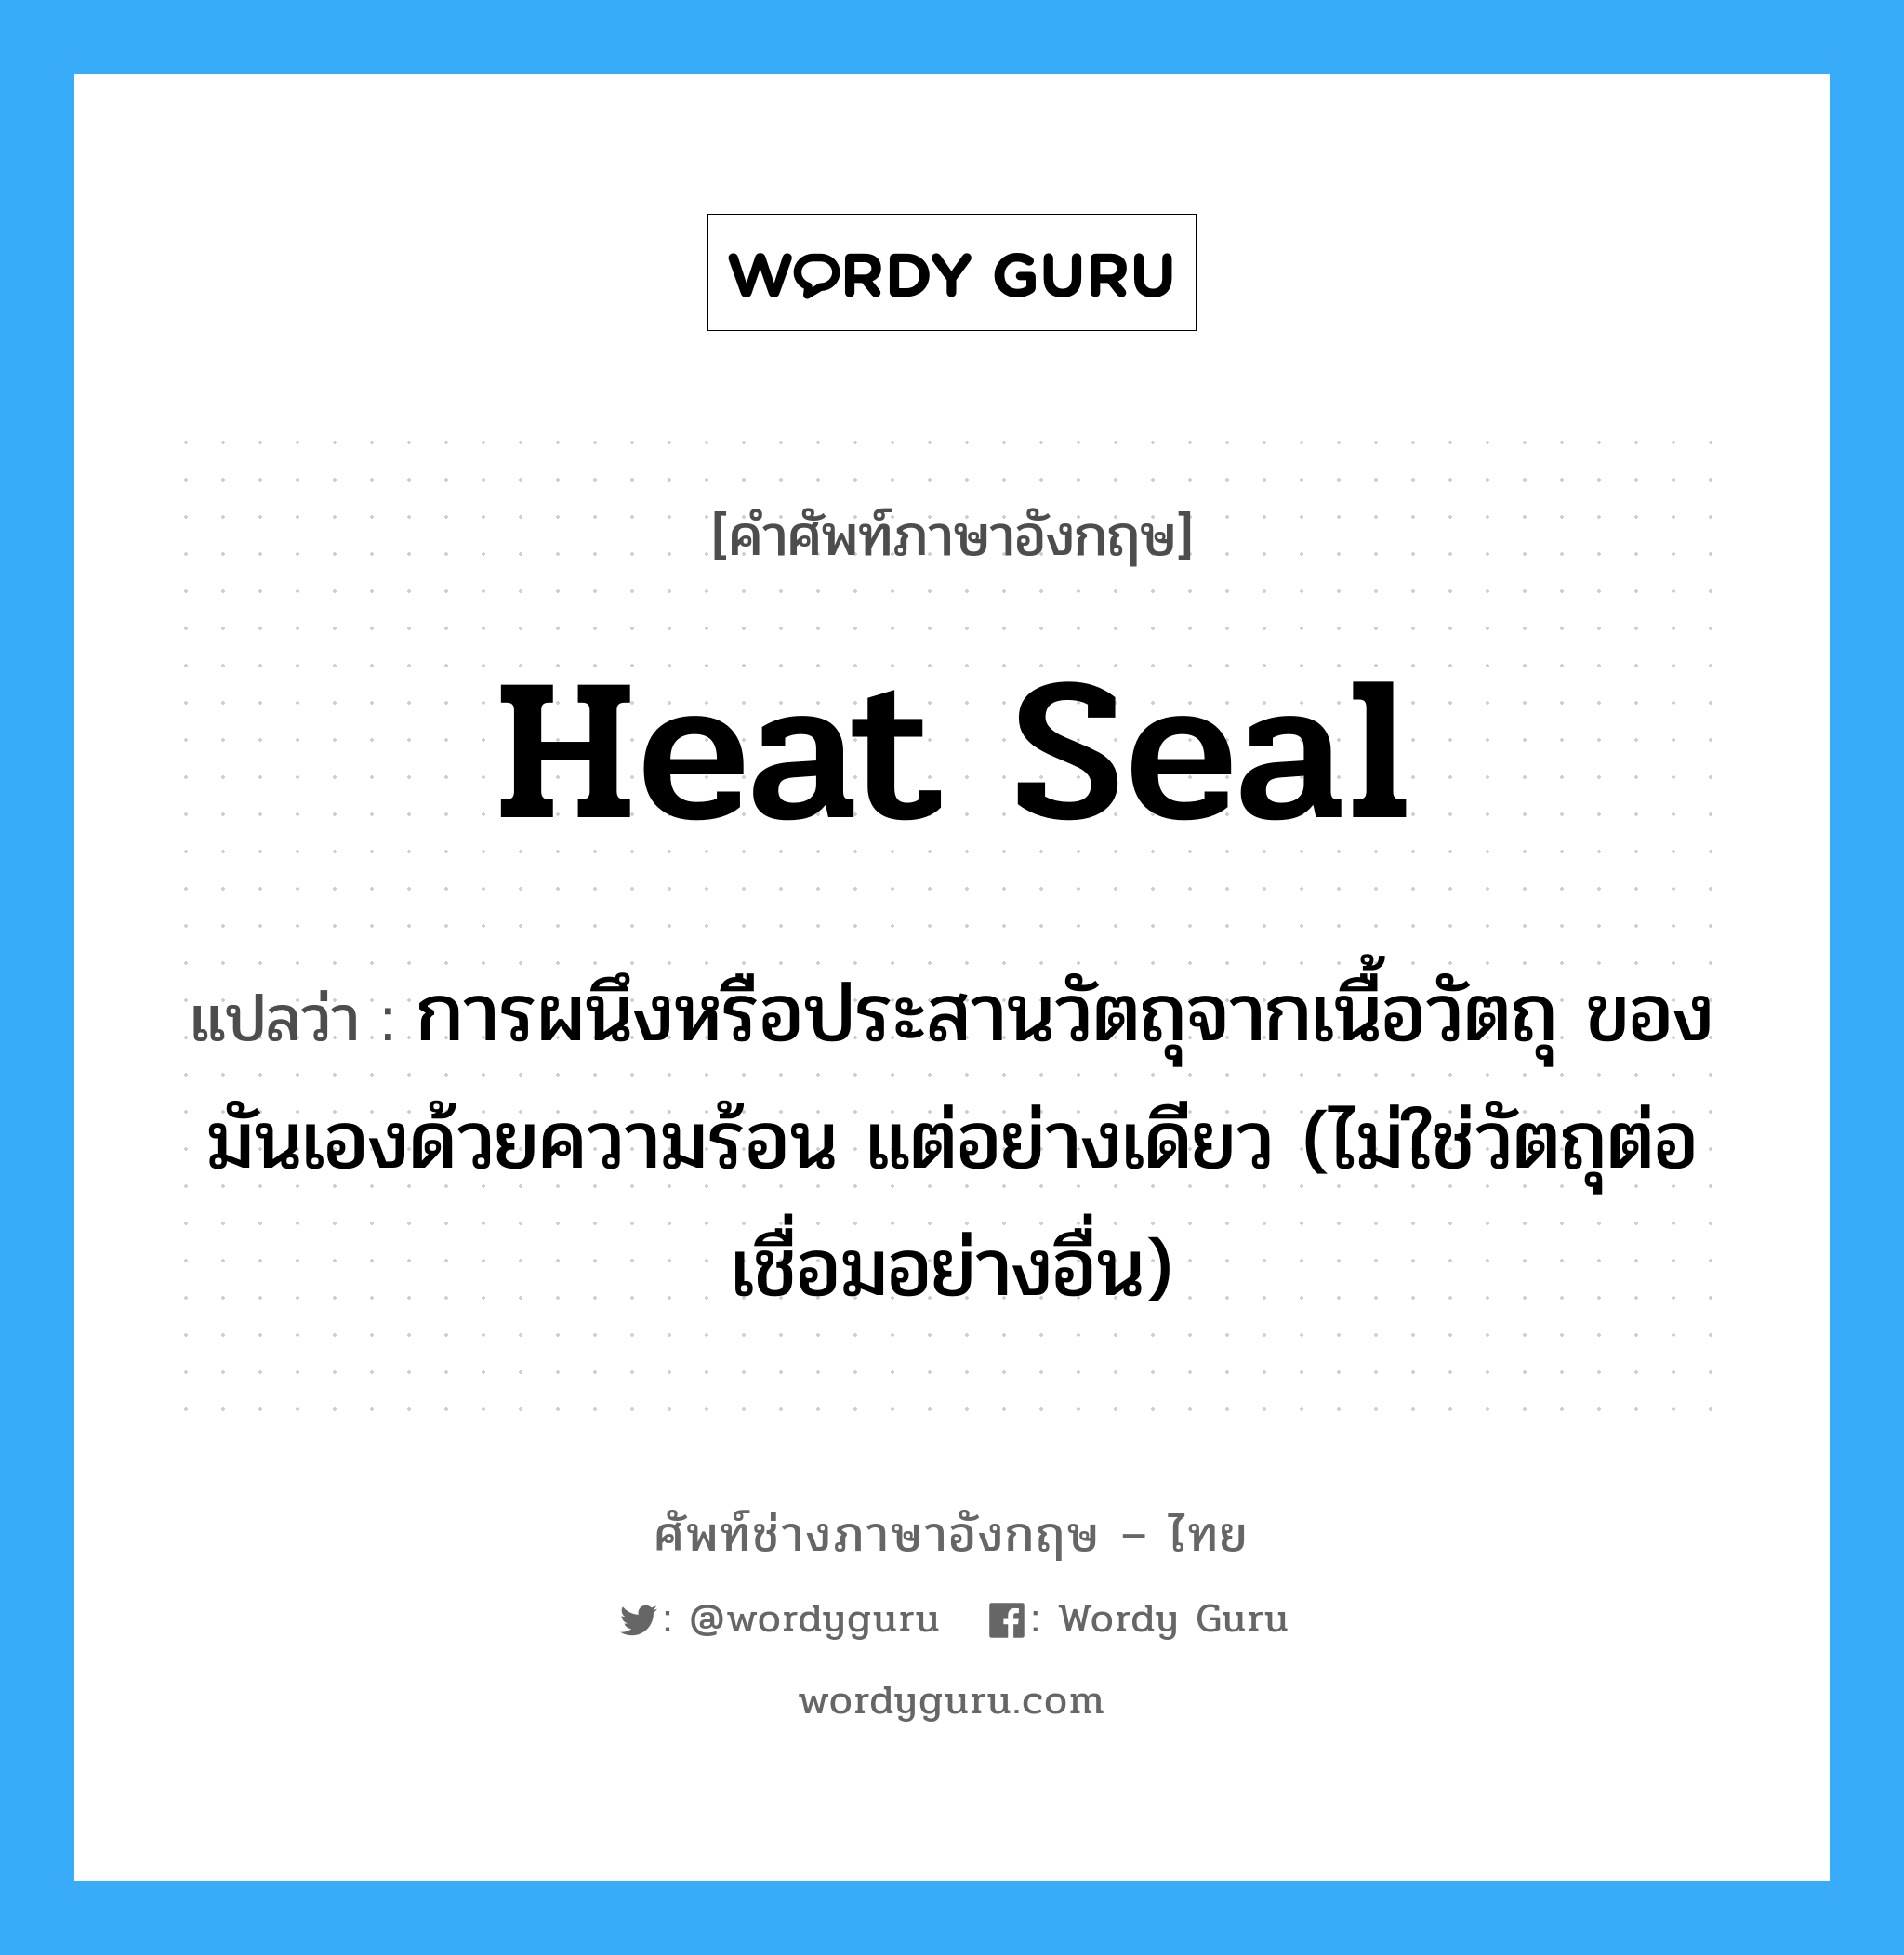 heat seal แปลว่า?, คำศัพท์ช่างภาษาอังกฤษ - ไทย heat seal คำศัพท์ภาษาอังกฤษ heat seal แปลว่า การผนึงหรือประสานวัตถุจากเนื้อวัตถุ ของมันเองด้วยความร้อน แต่อย่างเดียว (ไม่ใช่วัตถุต่อเชื่อมอย่างอื่น)